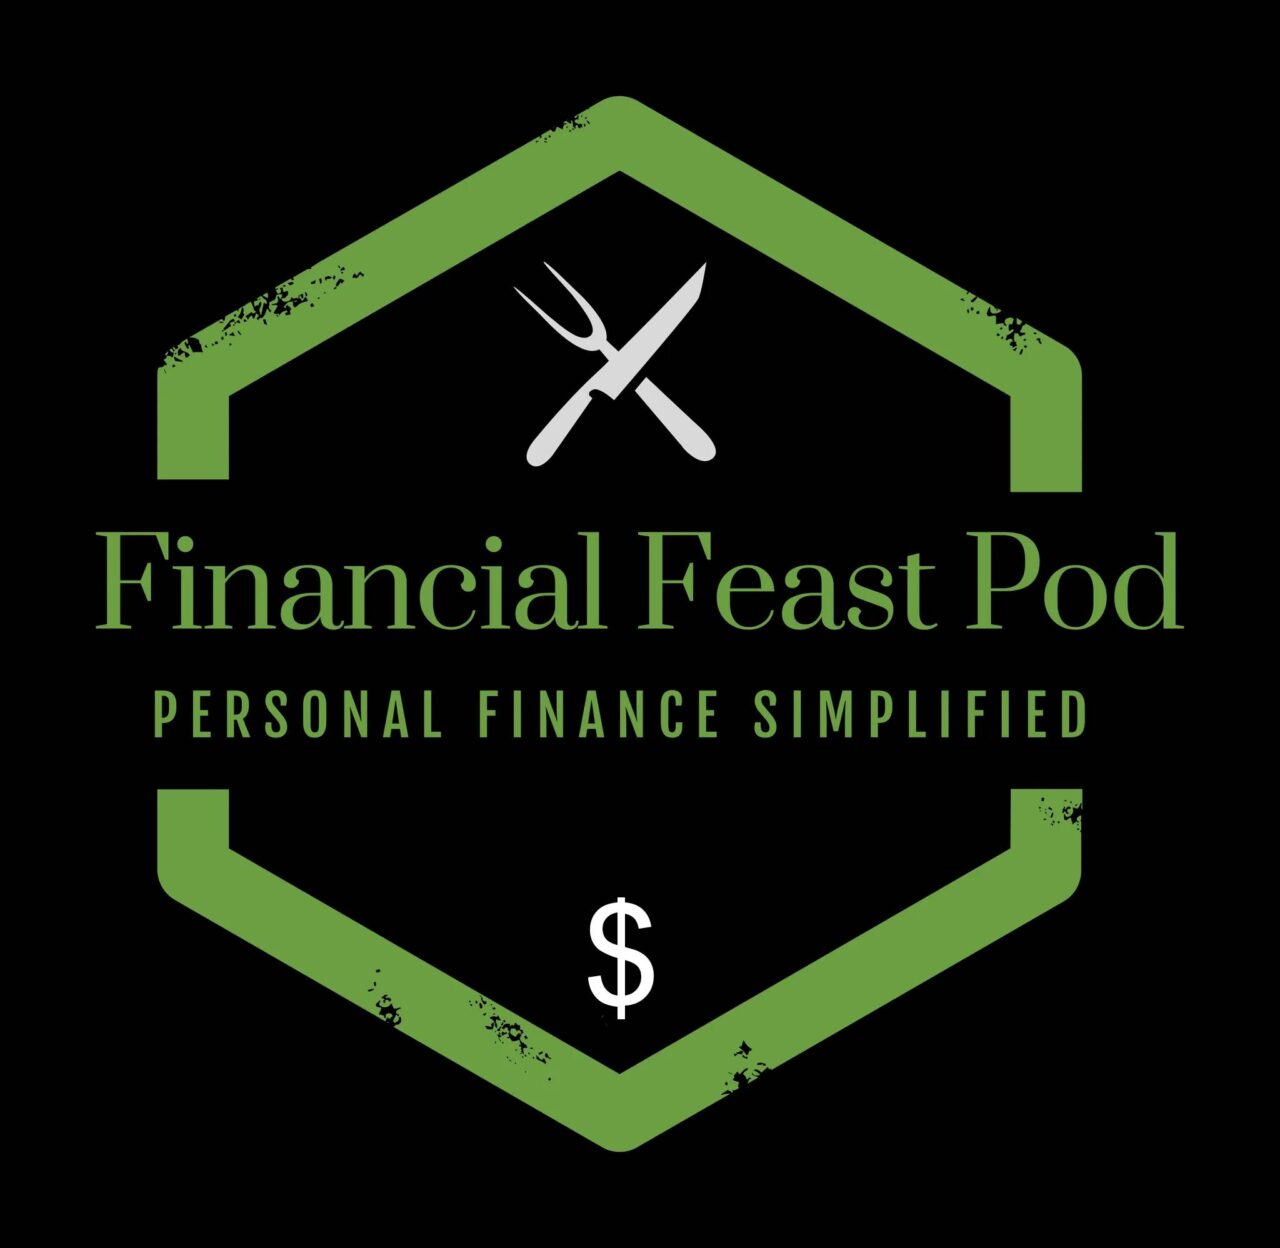 Financial Feast Pod